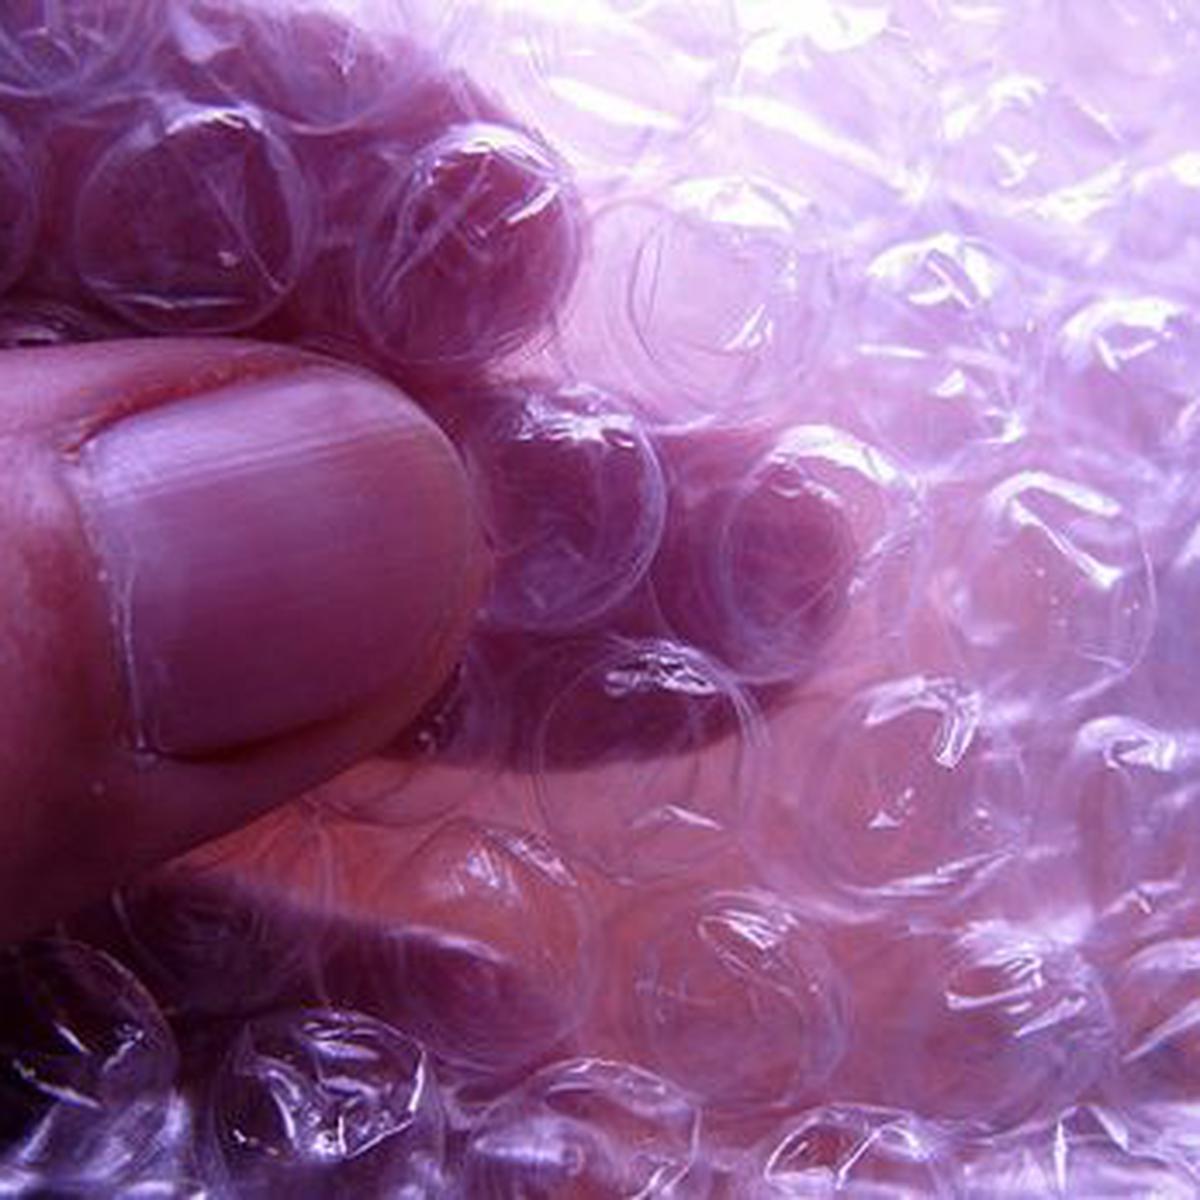 Cómo se hace el plástico de burbujas y cuál es su origen